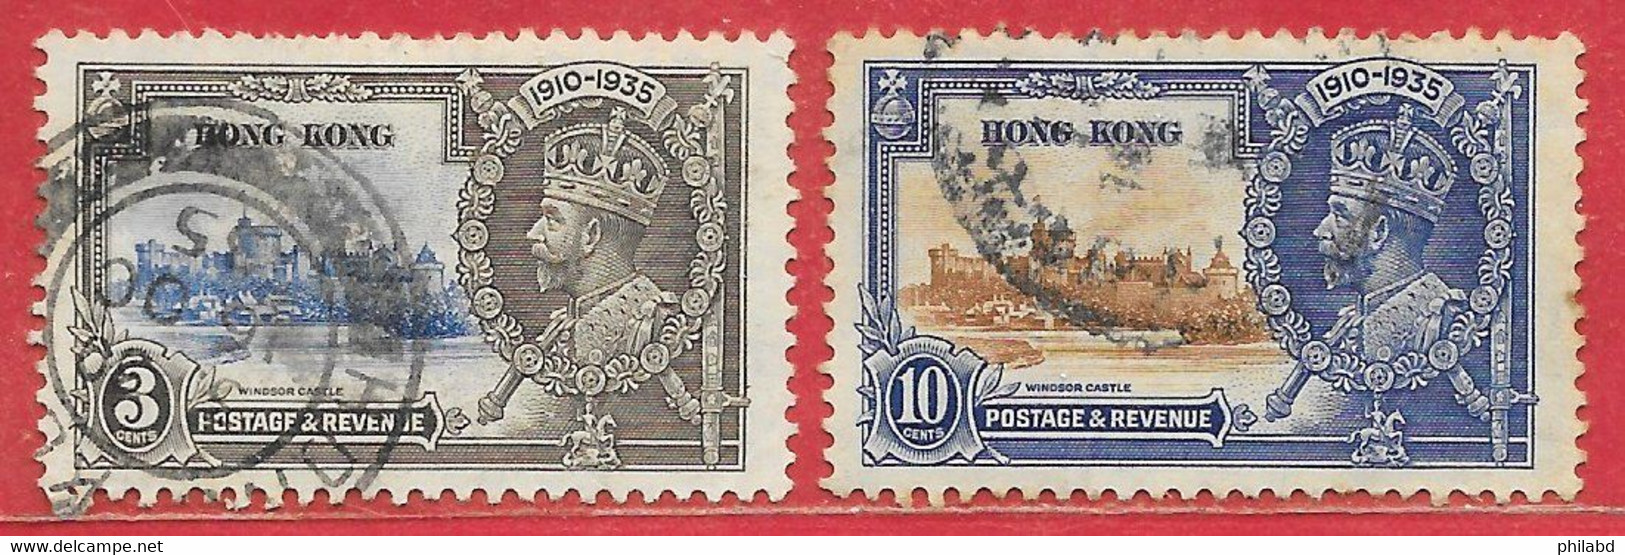 Hong Kong N°132 3c Gris & Outremer, N°134 10c Bleu-violet & Brun-rouge (filigrane Ca Multiple, Dentelé 11x12) 1935 O - Usados